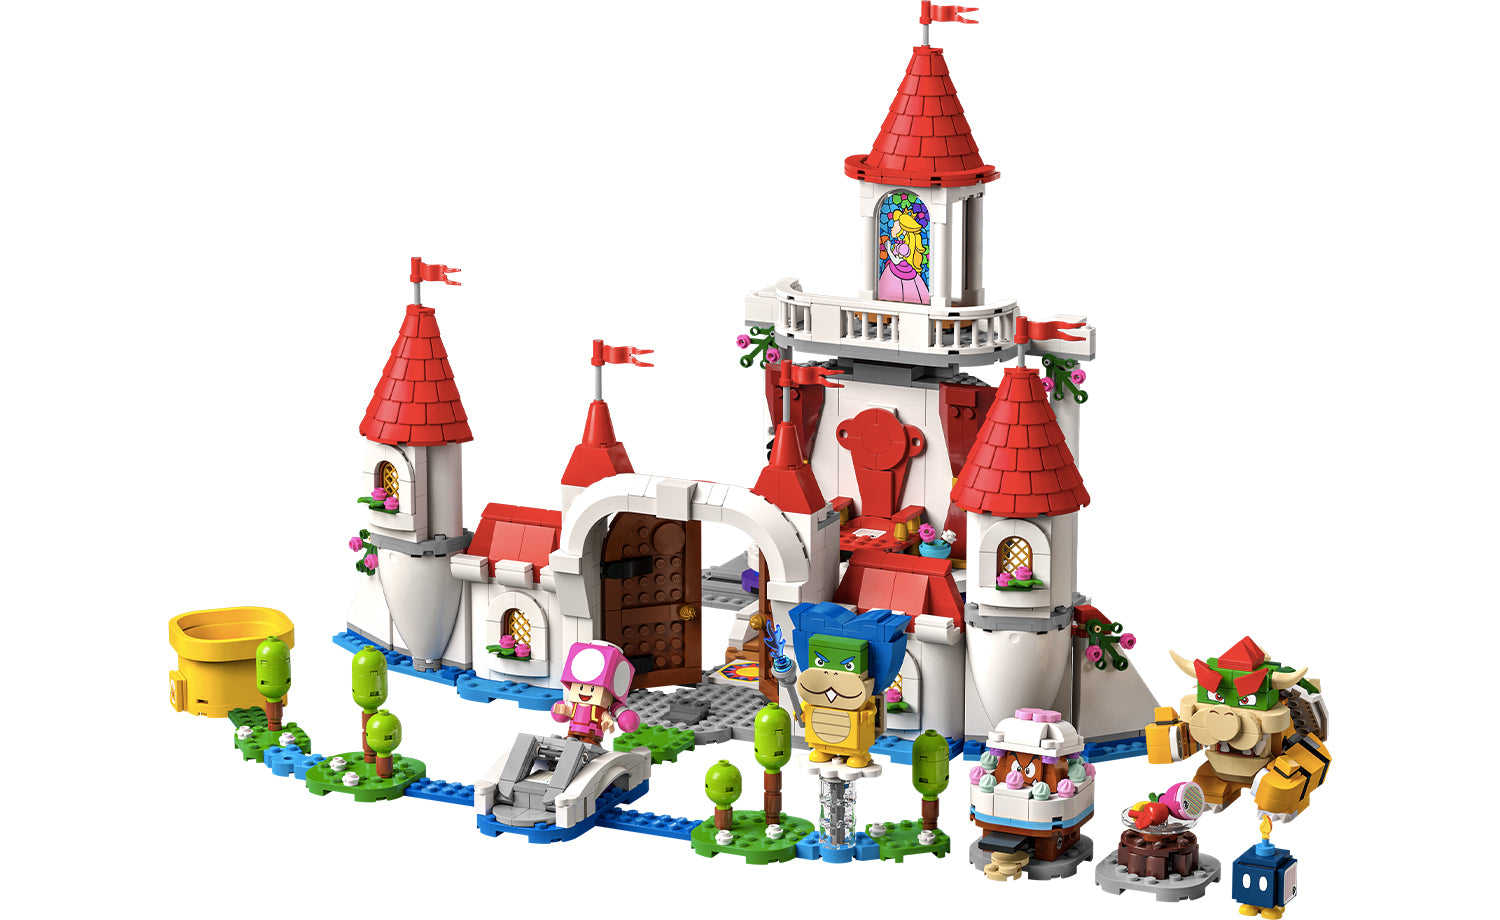 [飛米樂高積木磚賣店] LEGO 71408 Mario-碧姬公主城堡